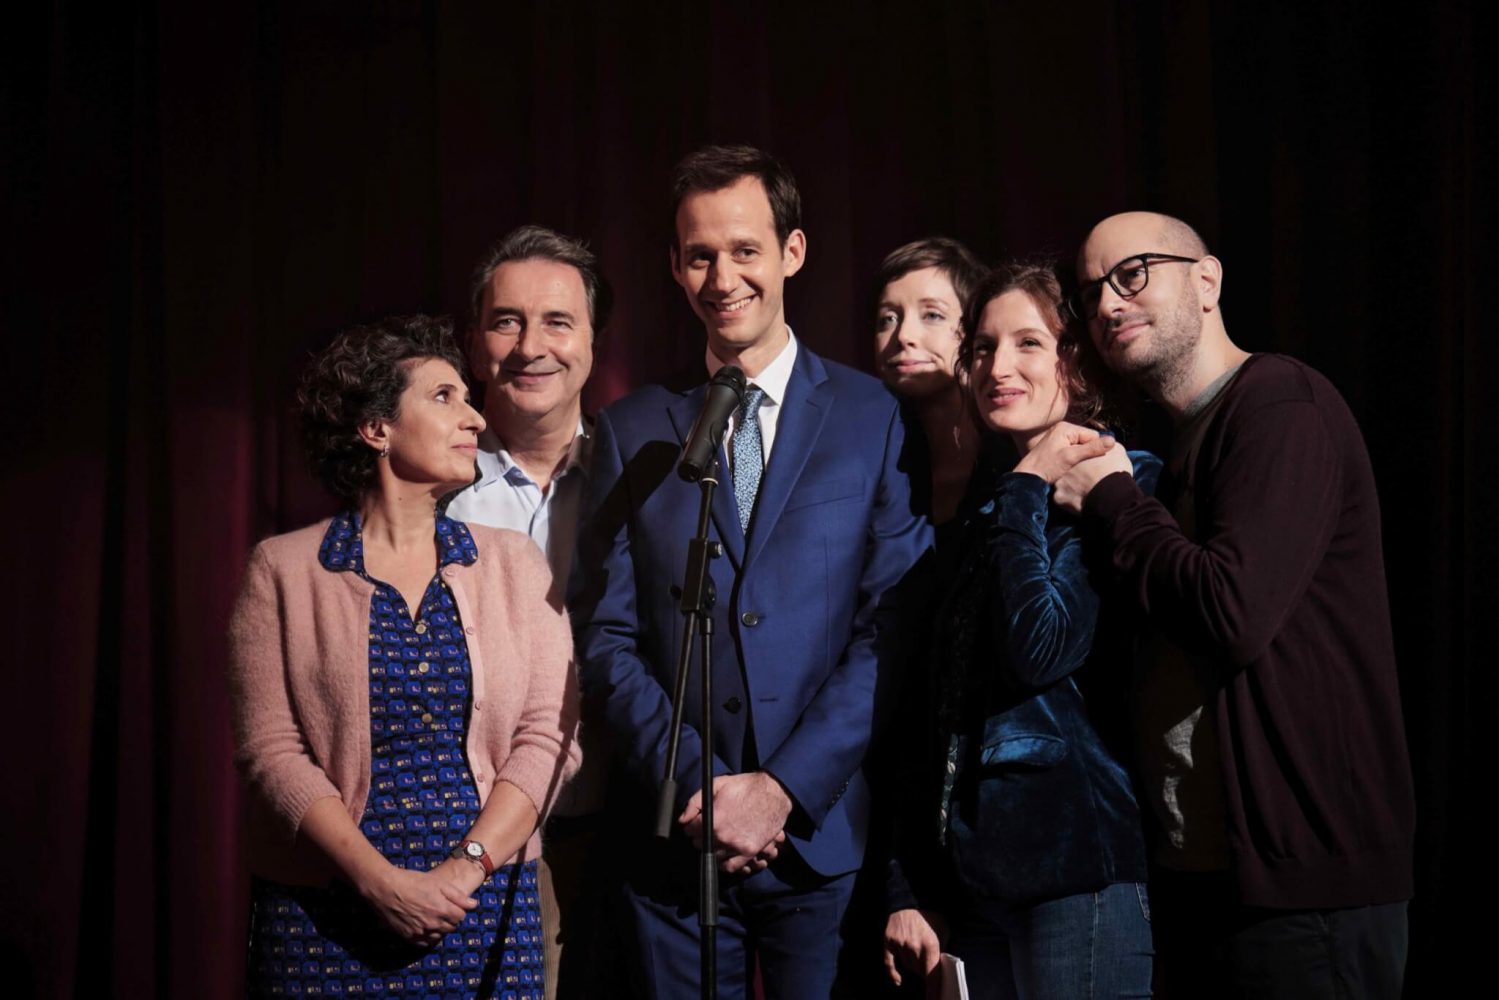 La comédie française « Le Discours » arrive en Slovaquie